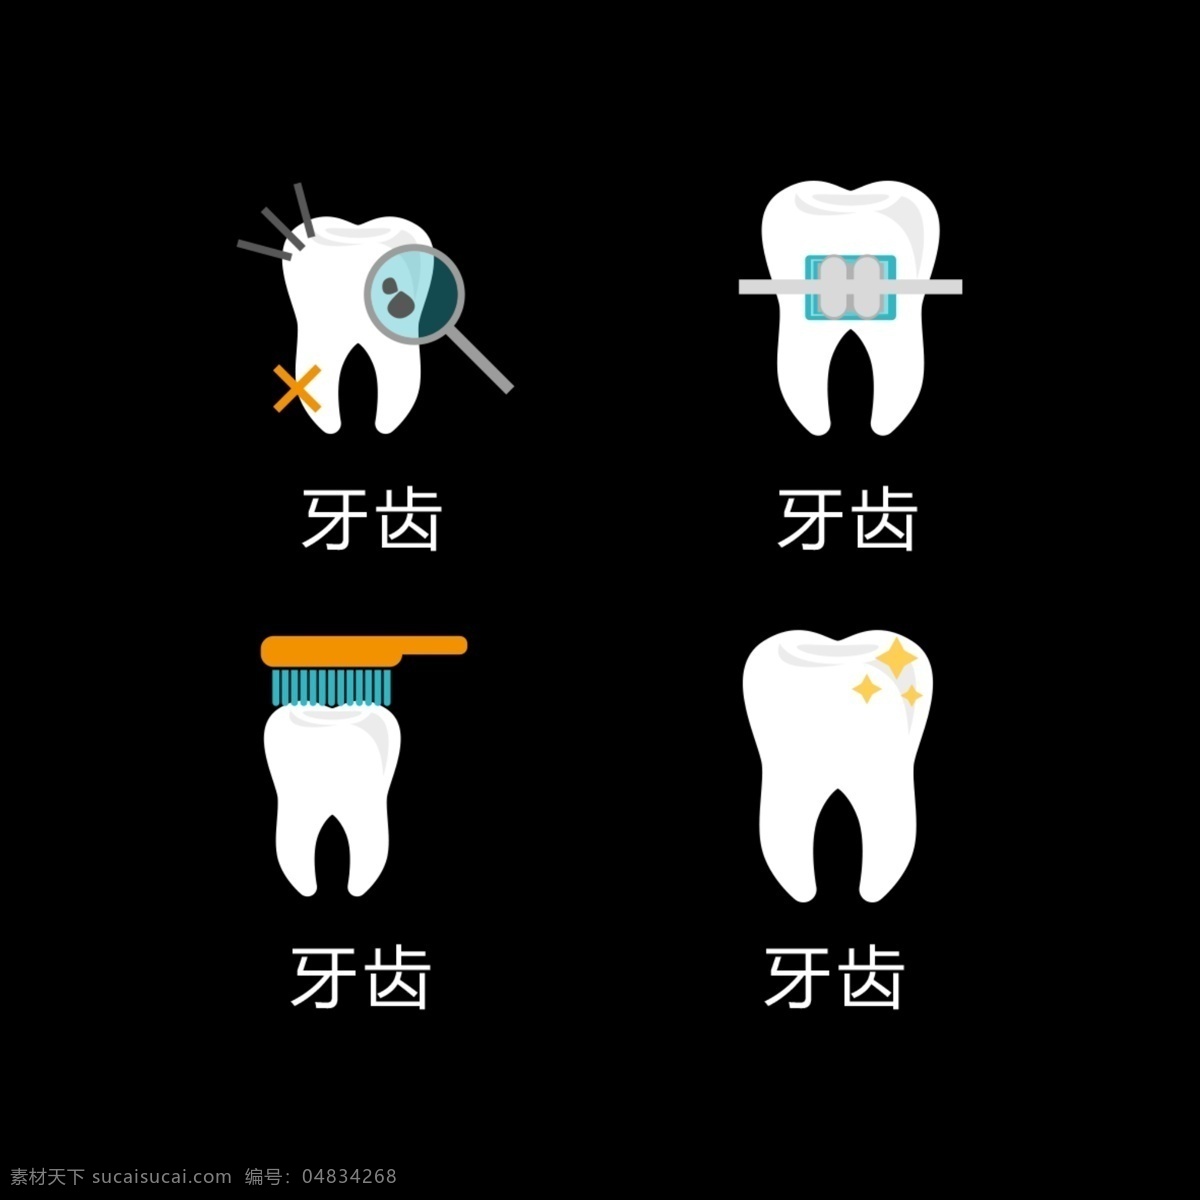 牙齿健康 牙齿 卡通牙齿 补牙 刷牙 智齿 口腔健康 牙齿美容 牙科 蛀牙